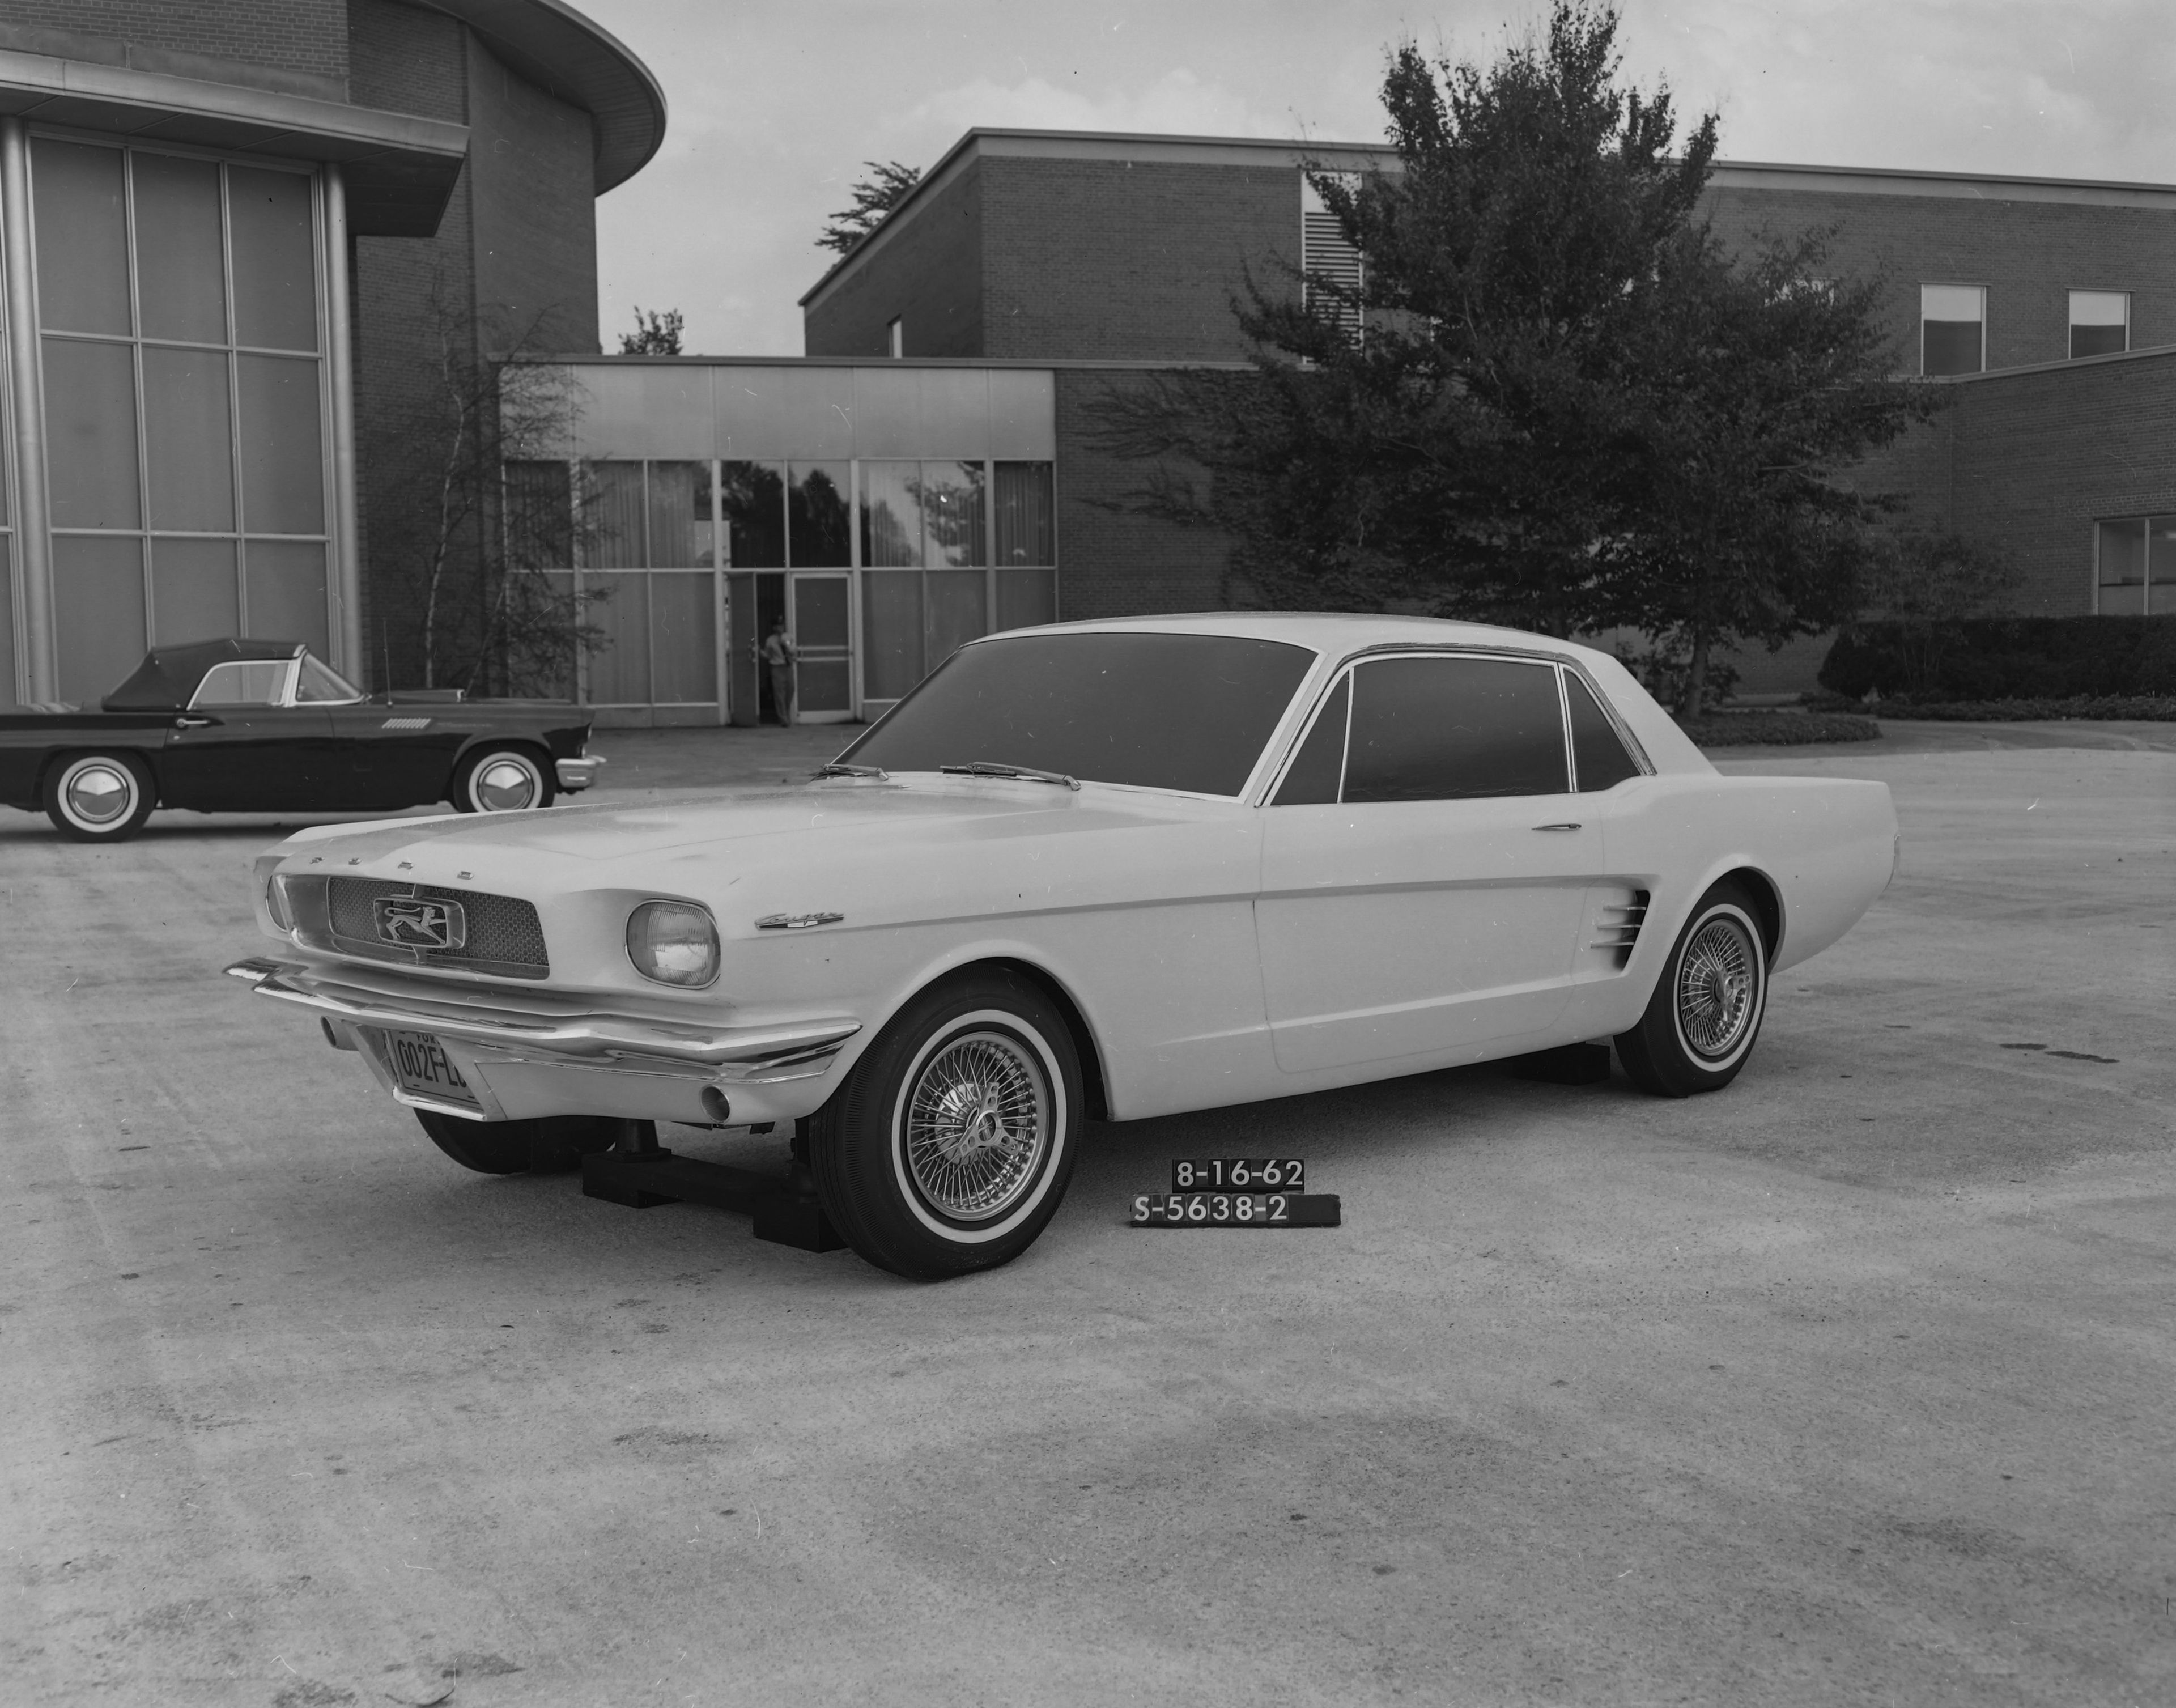 Ford Mustang (prototipo de Ford Studio en 1962)